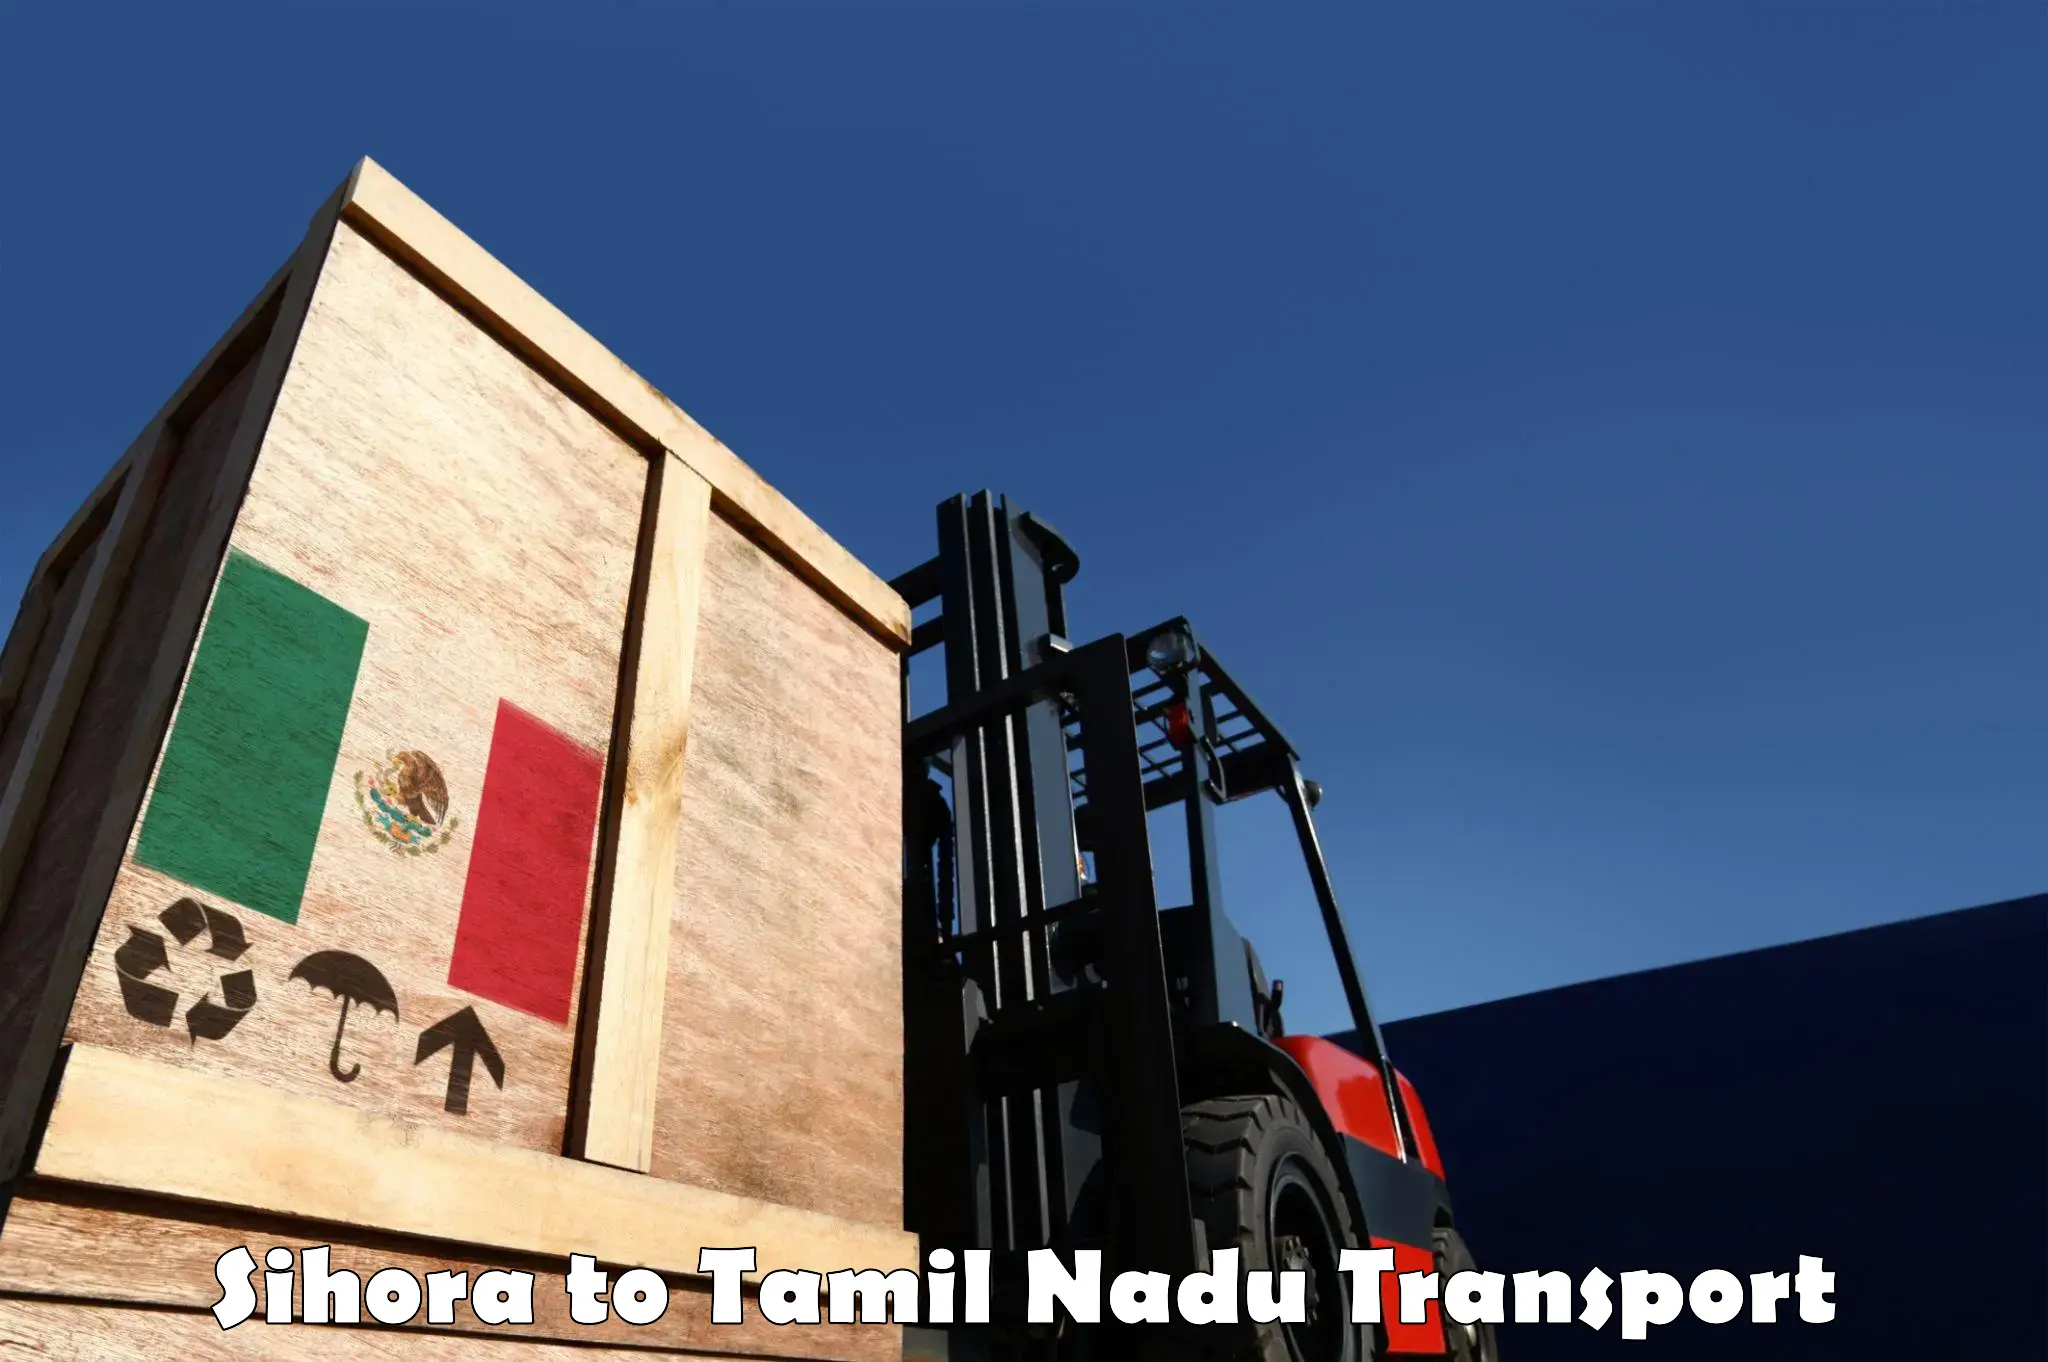 Furniture transport service Sihora to Thiruvadanai